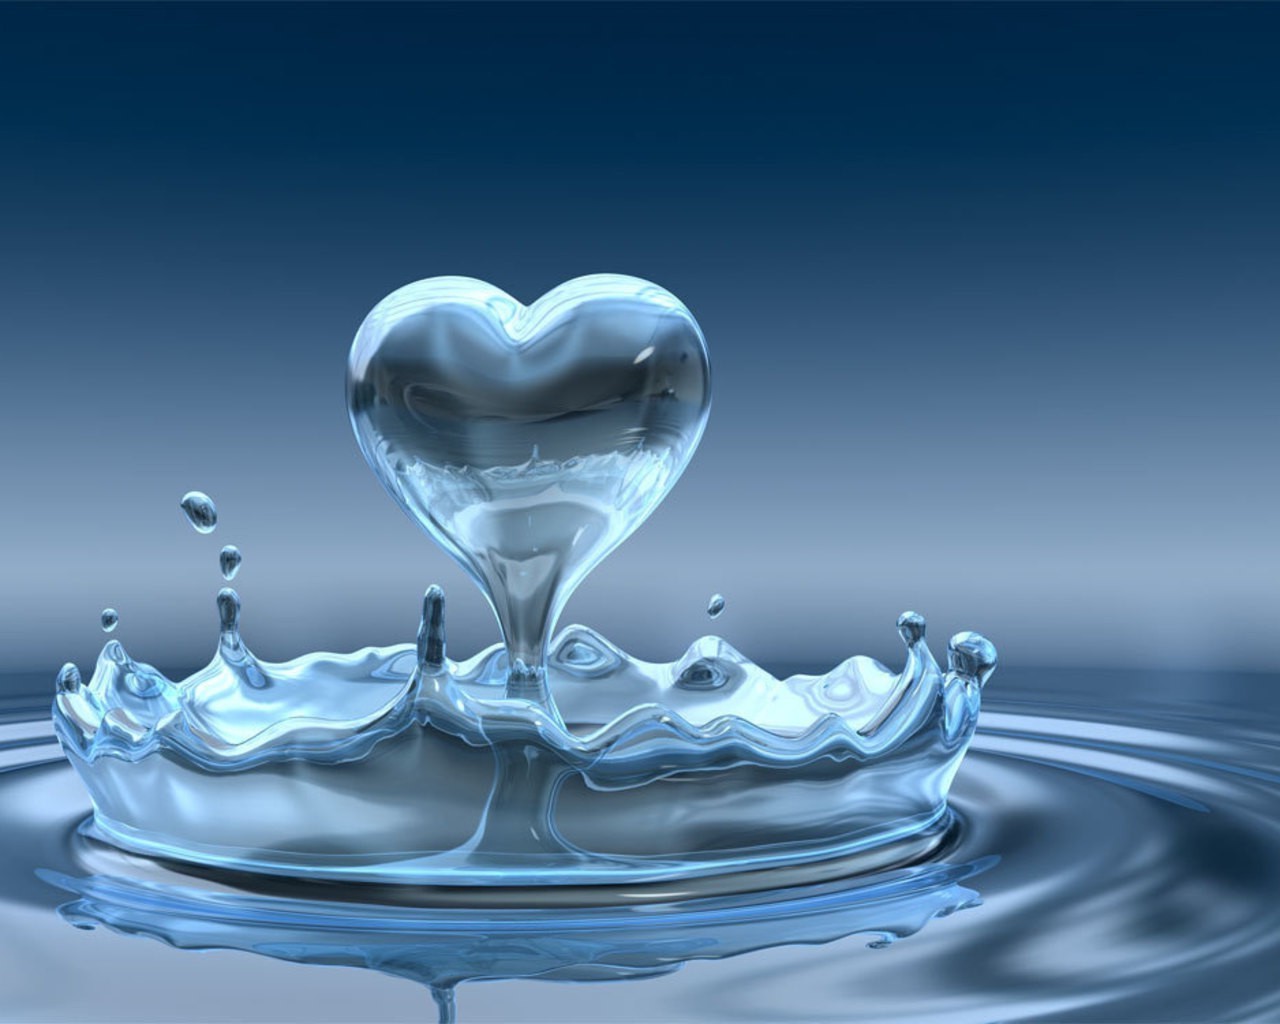 сердечки пить воды понятно всплеск пузырь волна жидкость падение чистота чистые пульсация гладкая мокрый отражение поток движения потека капли холодная